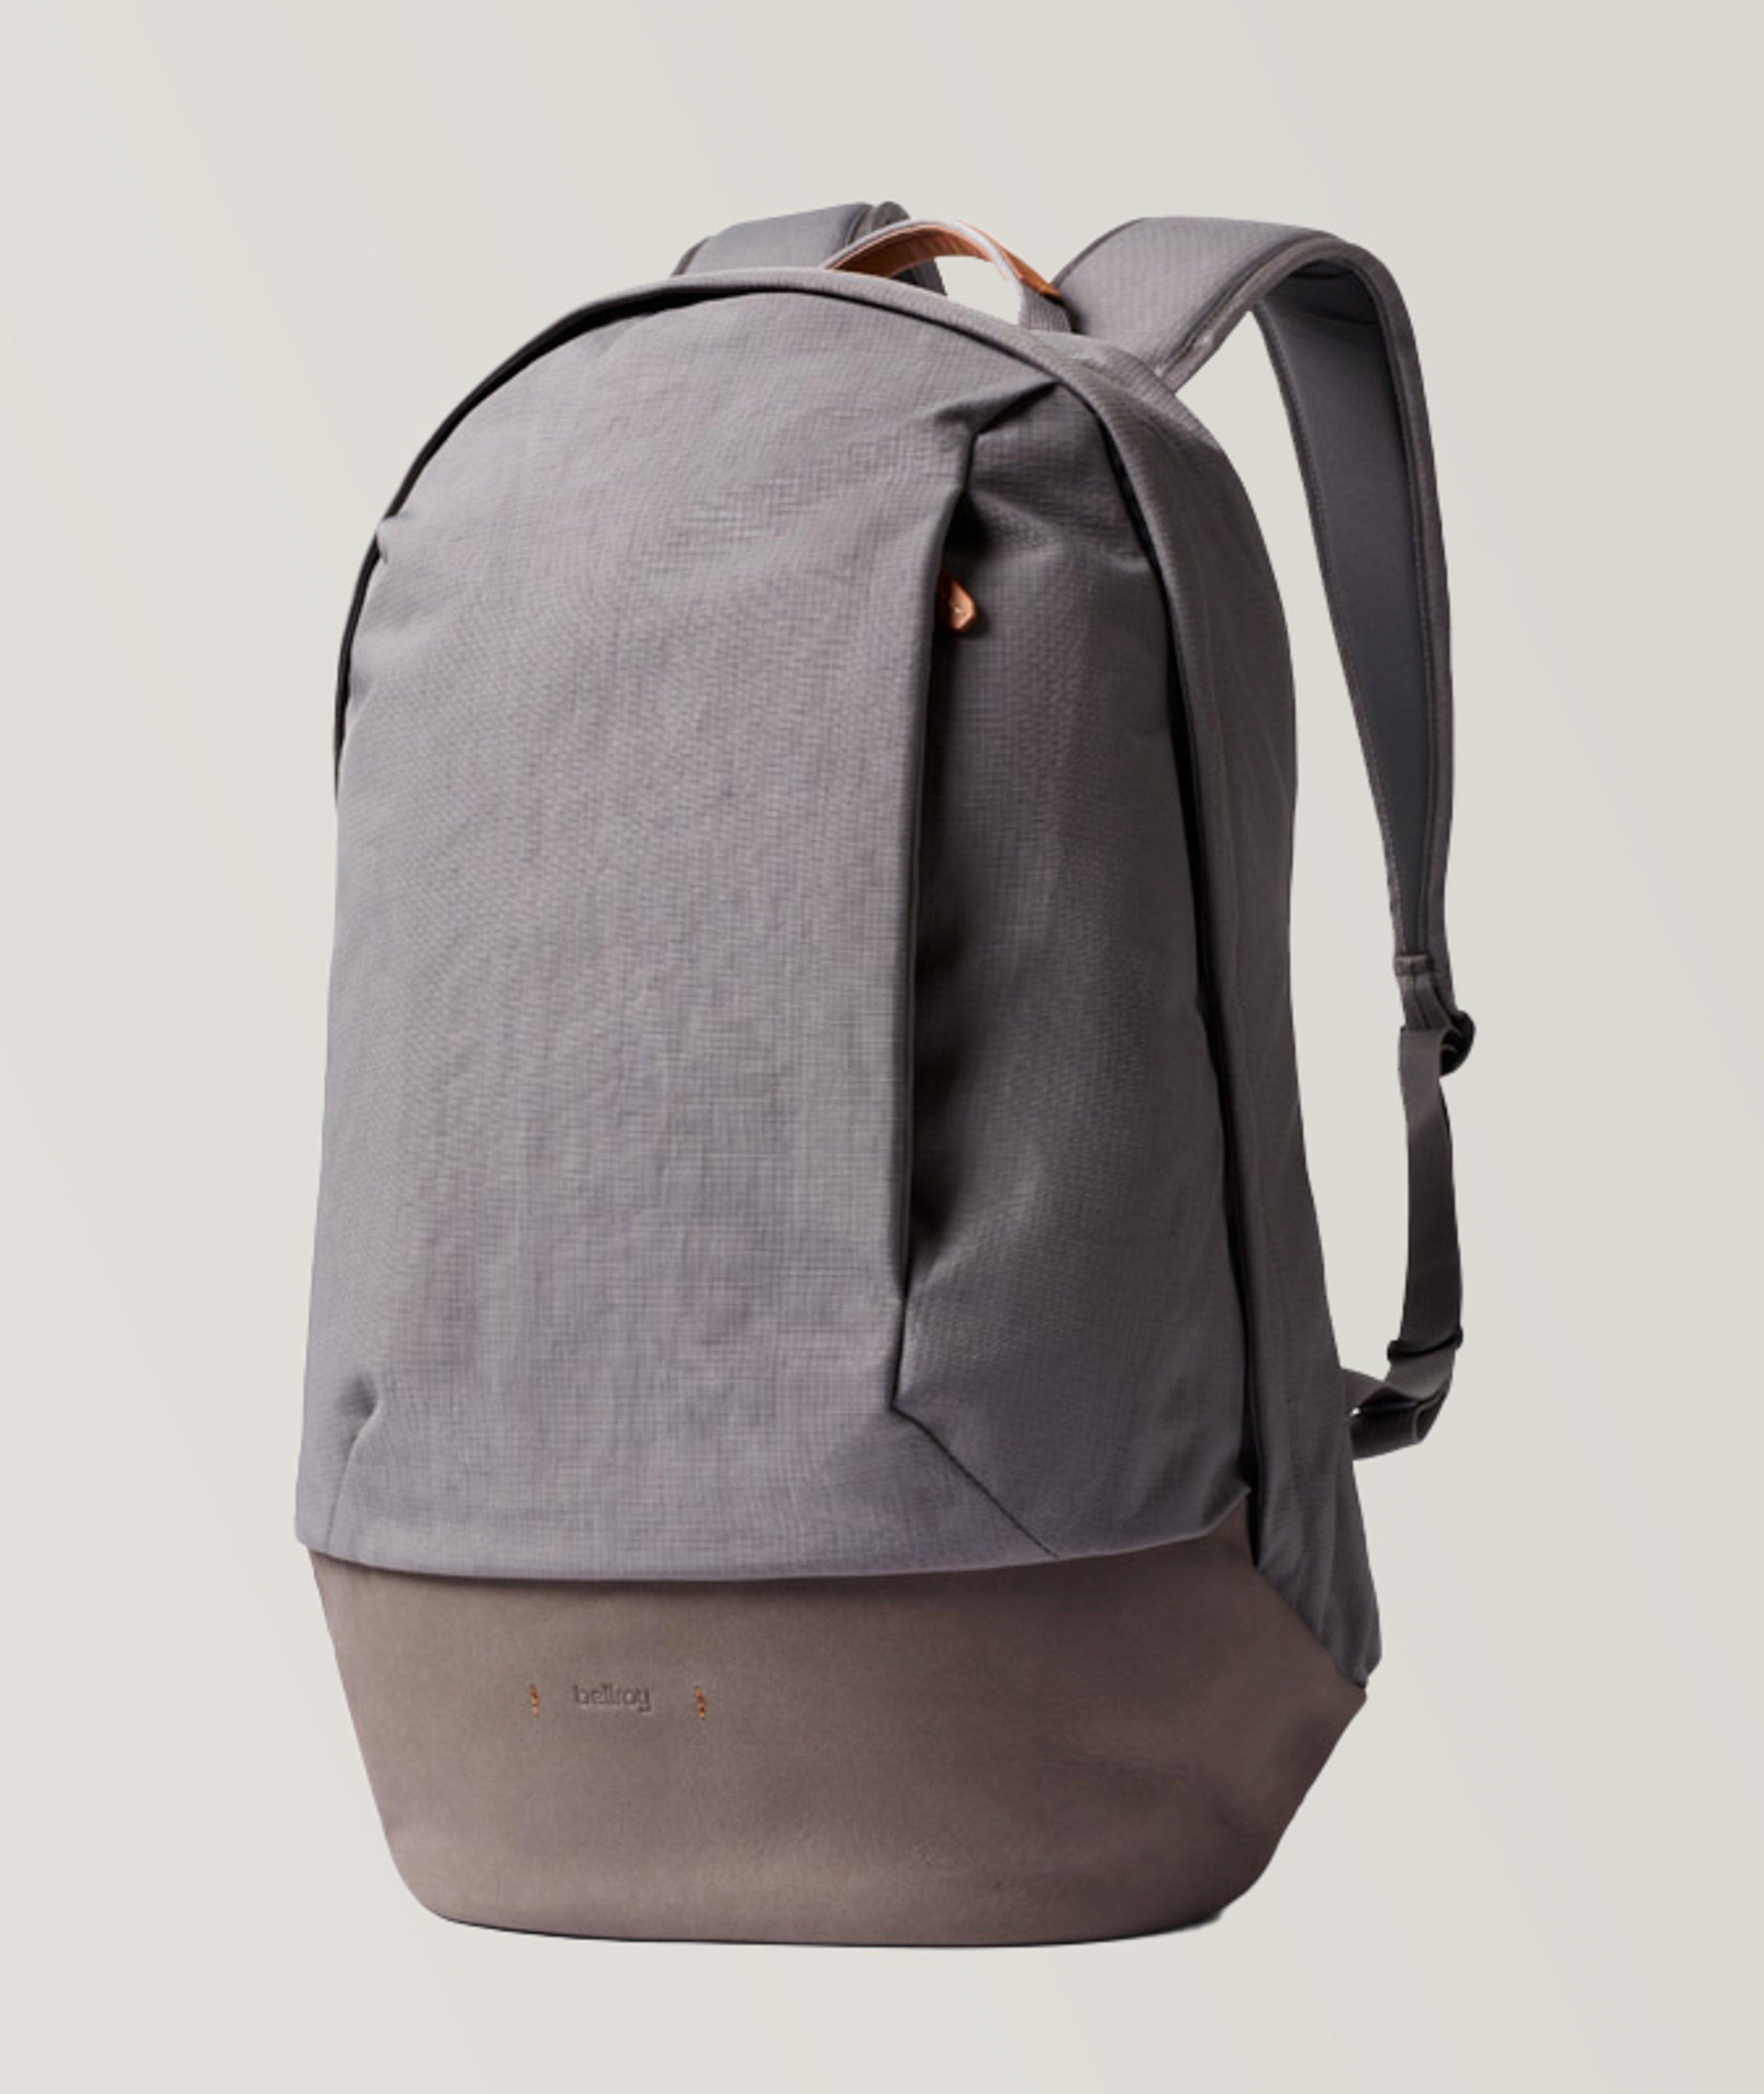 Classic Backpack Premium image 0